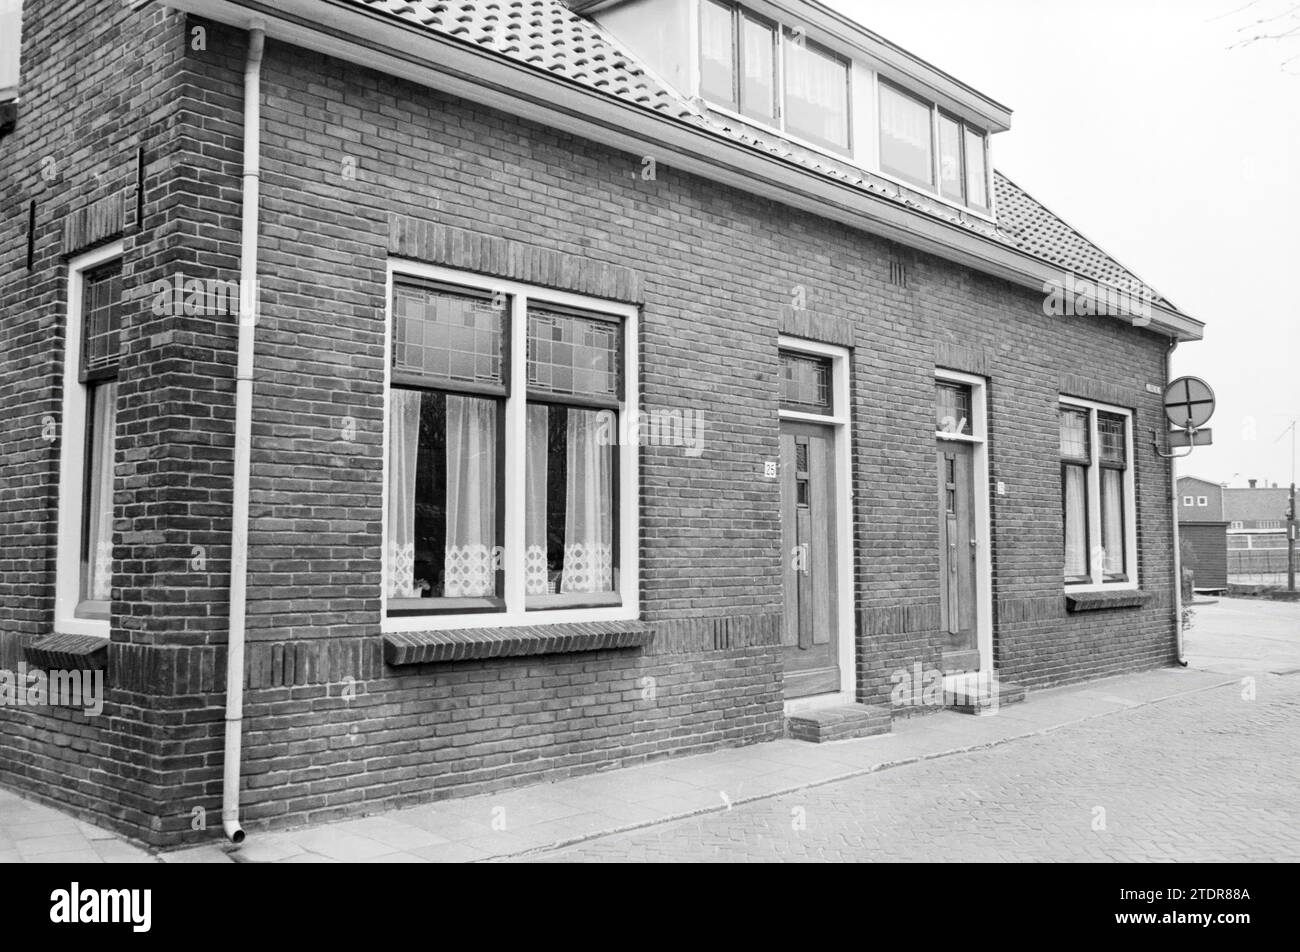 Fissures dans les bâtiments Rijnsburg, N.V. Vermeer, Rijnsburg, 26-04-1982, Whizgle nouvelles du passé, adaptées à l'avenir. Explorez les récits historiques, l'image de l'agence néerlandaise avec une perspective moderne, comblant le fossé entre les événements d'hier et les perspectives de demain. Un voyage intemporel façonnant les histoires qui façonnent notre avenir Banque D'Images